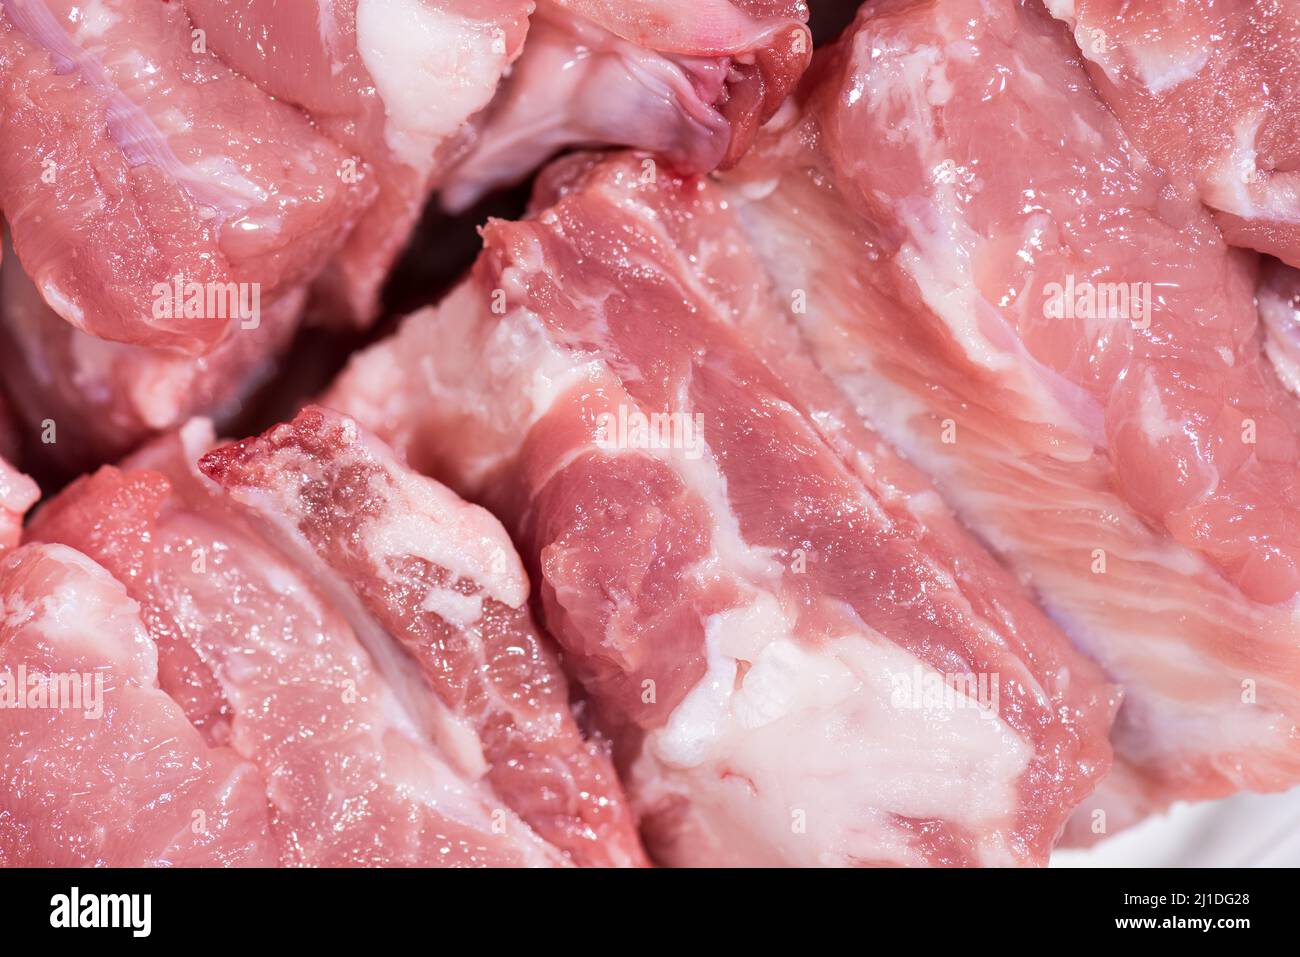 Gros plan vue de dessus pack morceaux de viande crue de filet de porc sur l'os, porc rouge frais avec graisse blanche de côte de porc, couper en morceaux et les mettre dans une rangée Banque D'Images